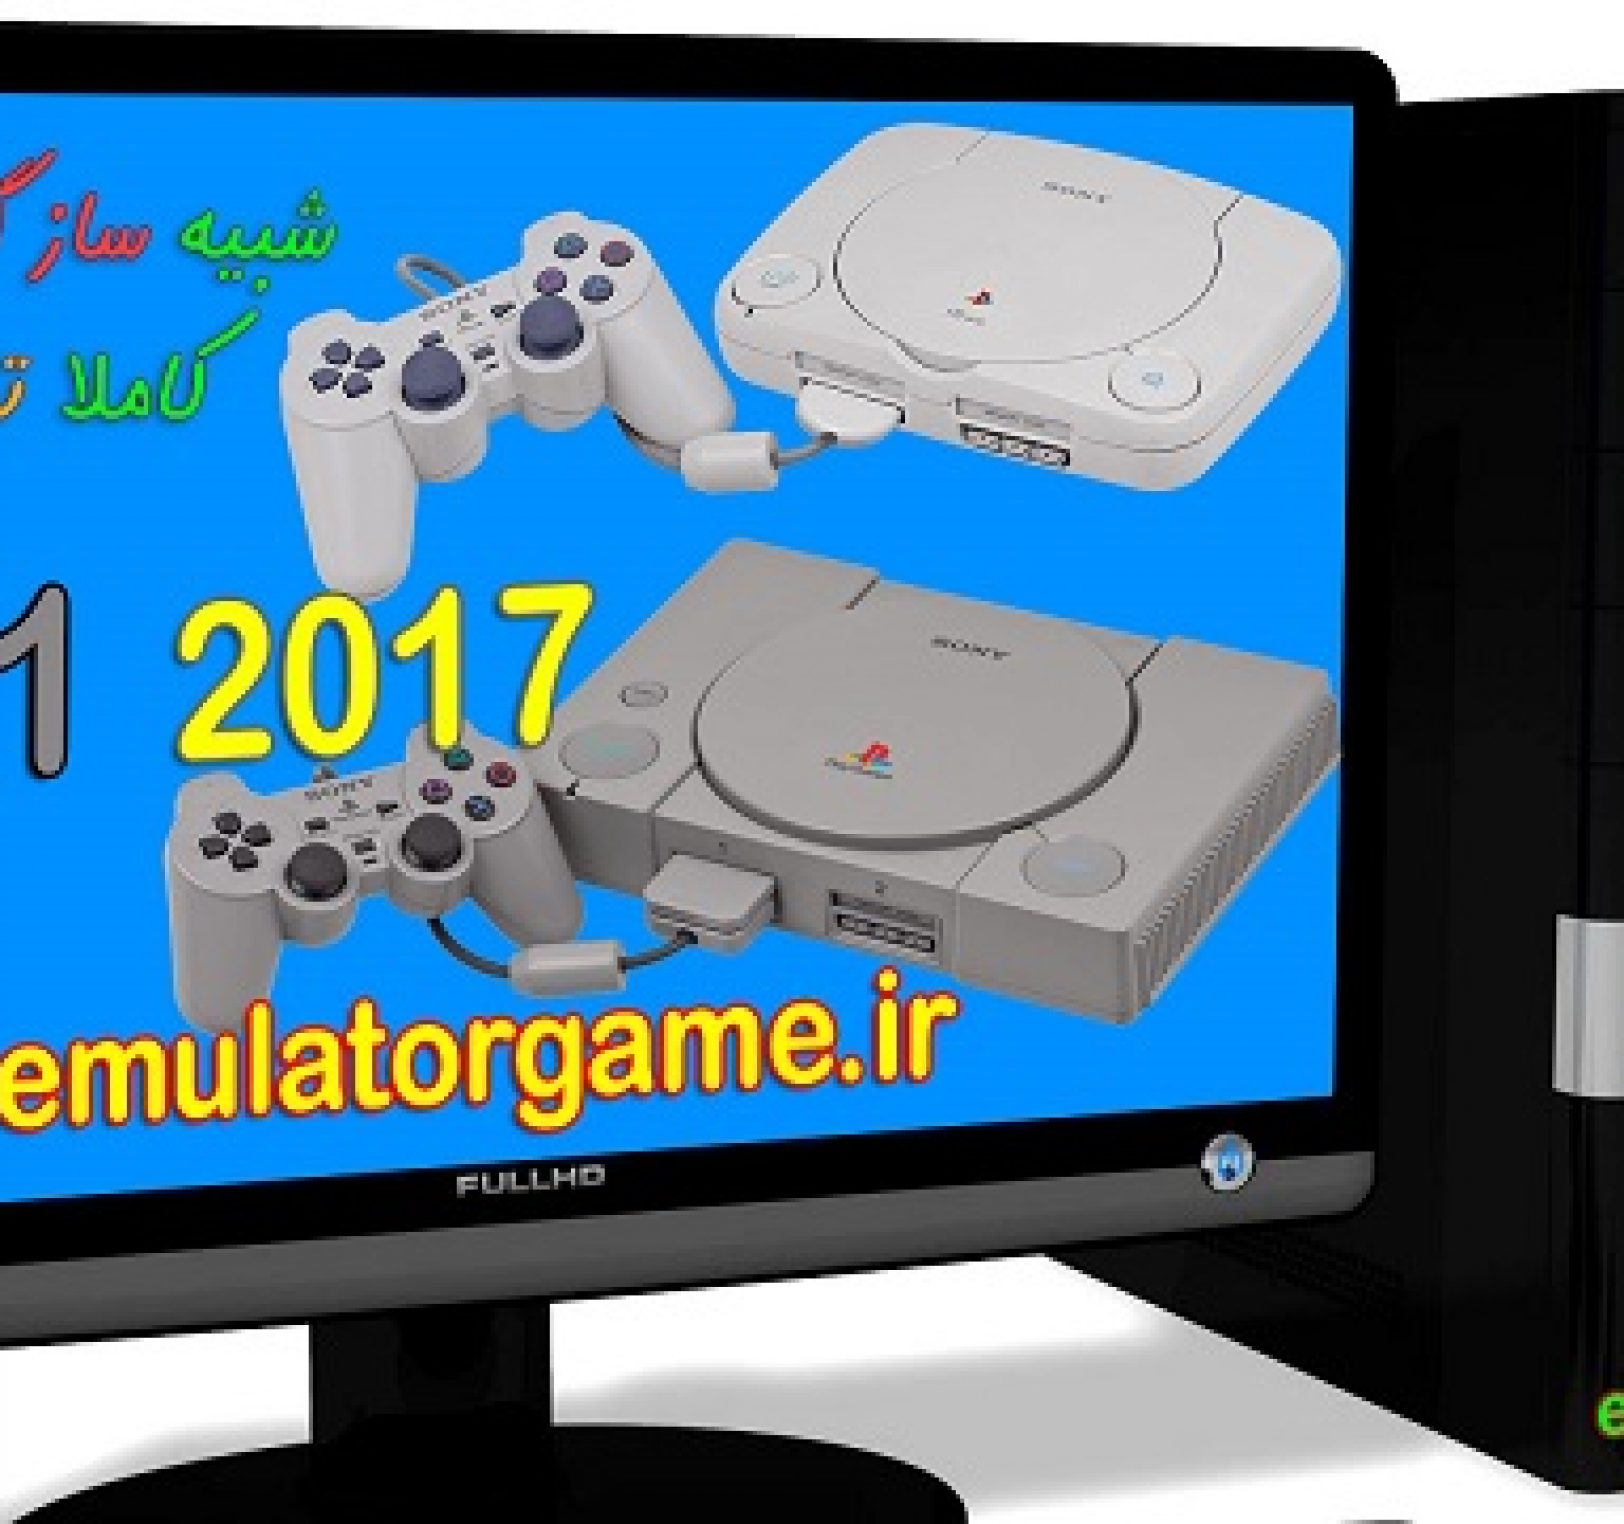 دانلود شبیه ساز Emulator ps1 کامپیوتر 2017 [جدید]